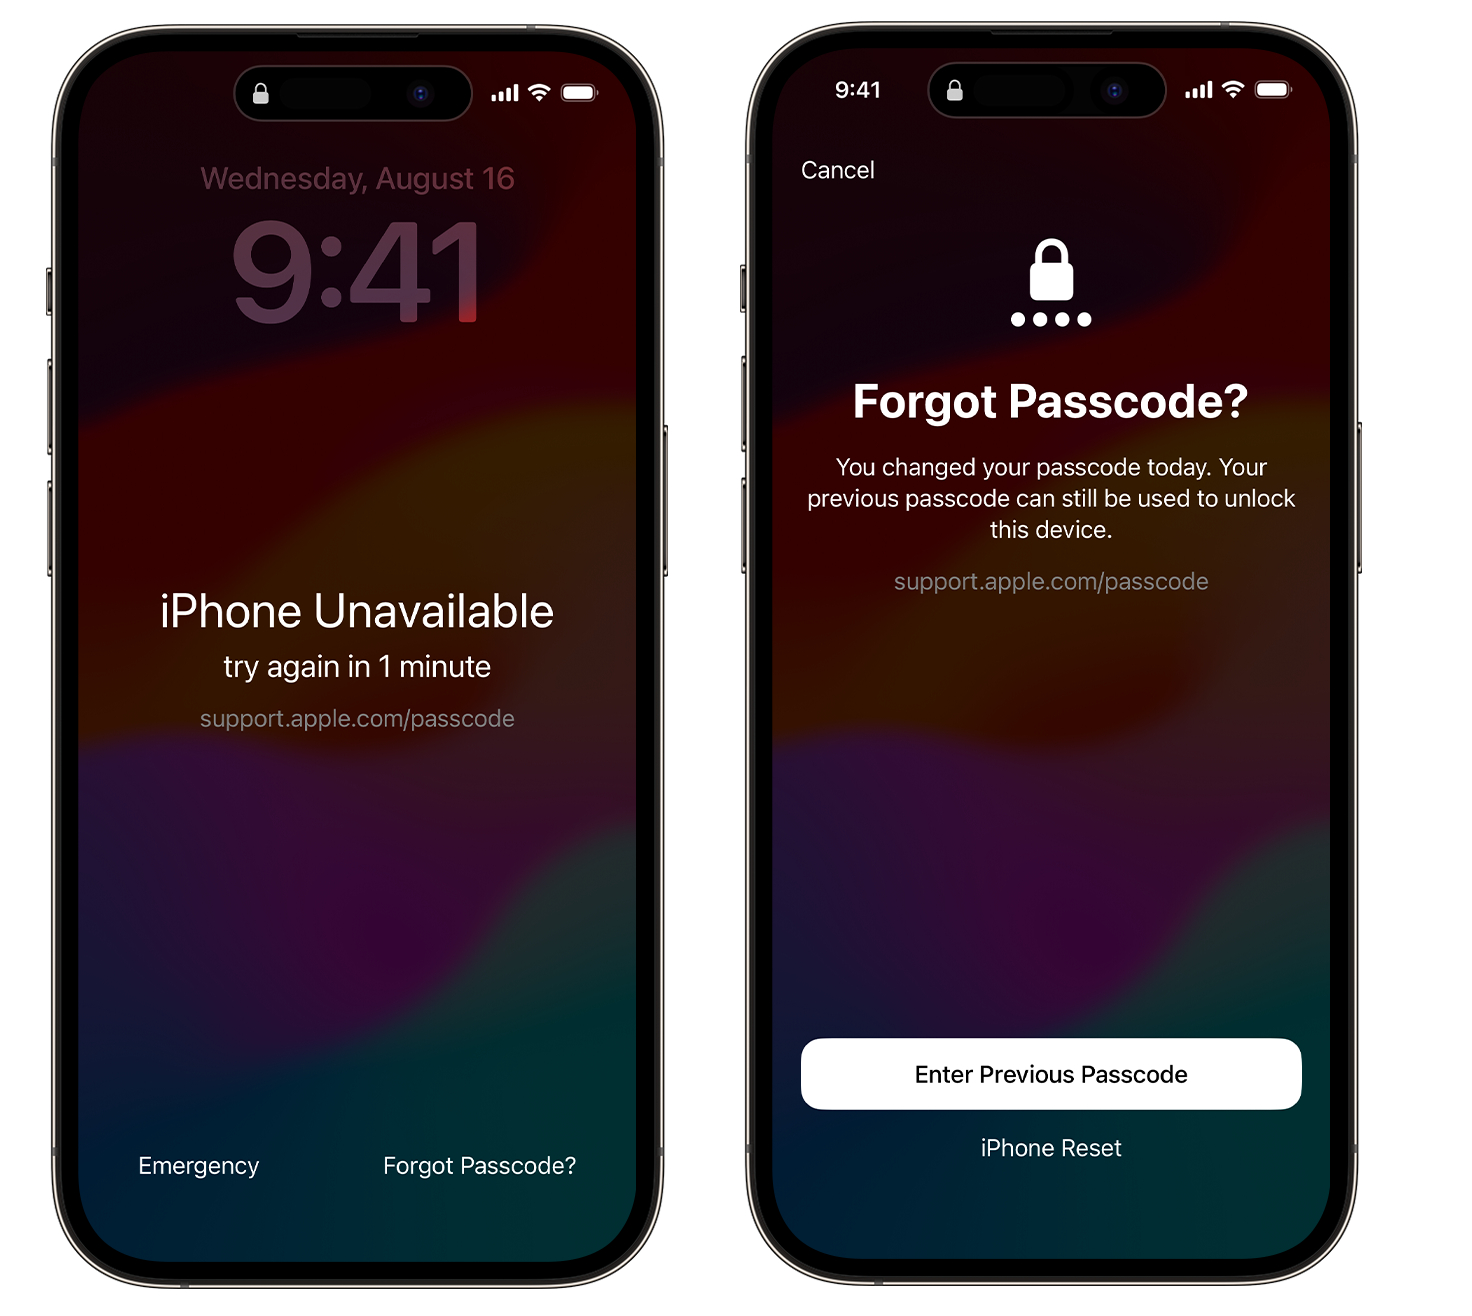 iphone忘記螢幕密碼怎麼辦，3種免電腦解鎖方法! - iPhone密碼破解 - 敗家達人推薦